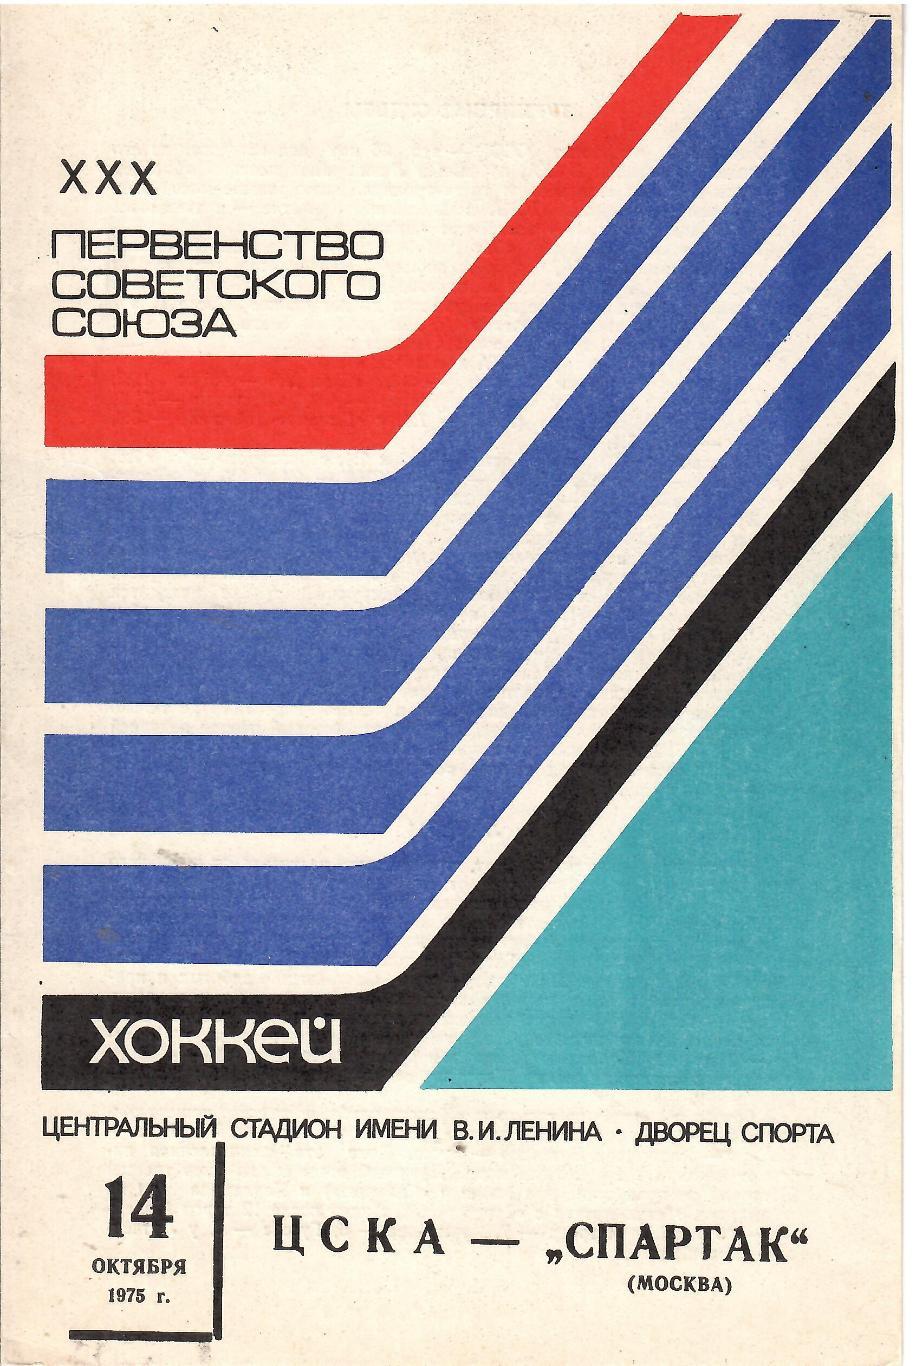 1975 Хоккей ЦСКА - Спартак Москва (14.10)